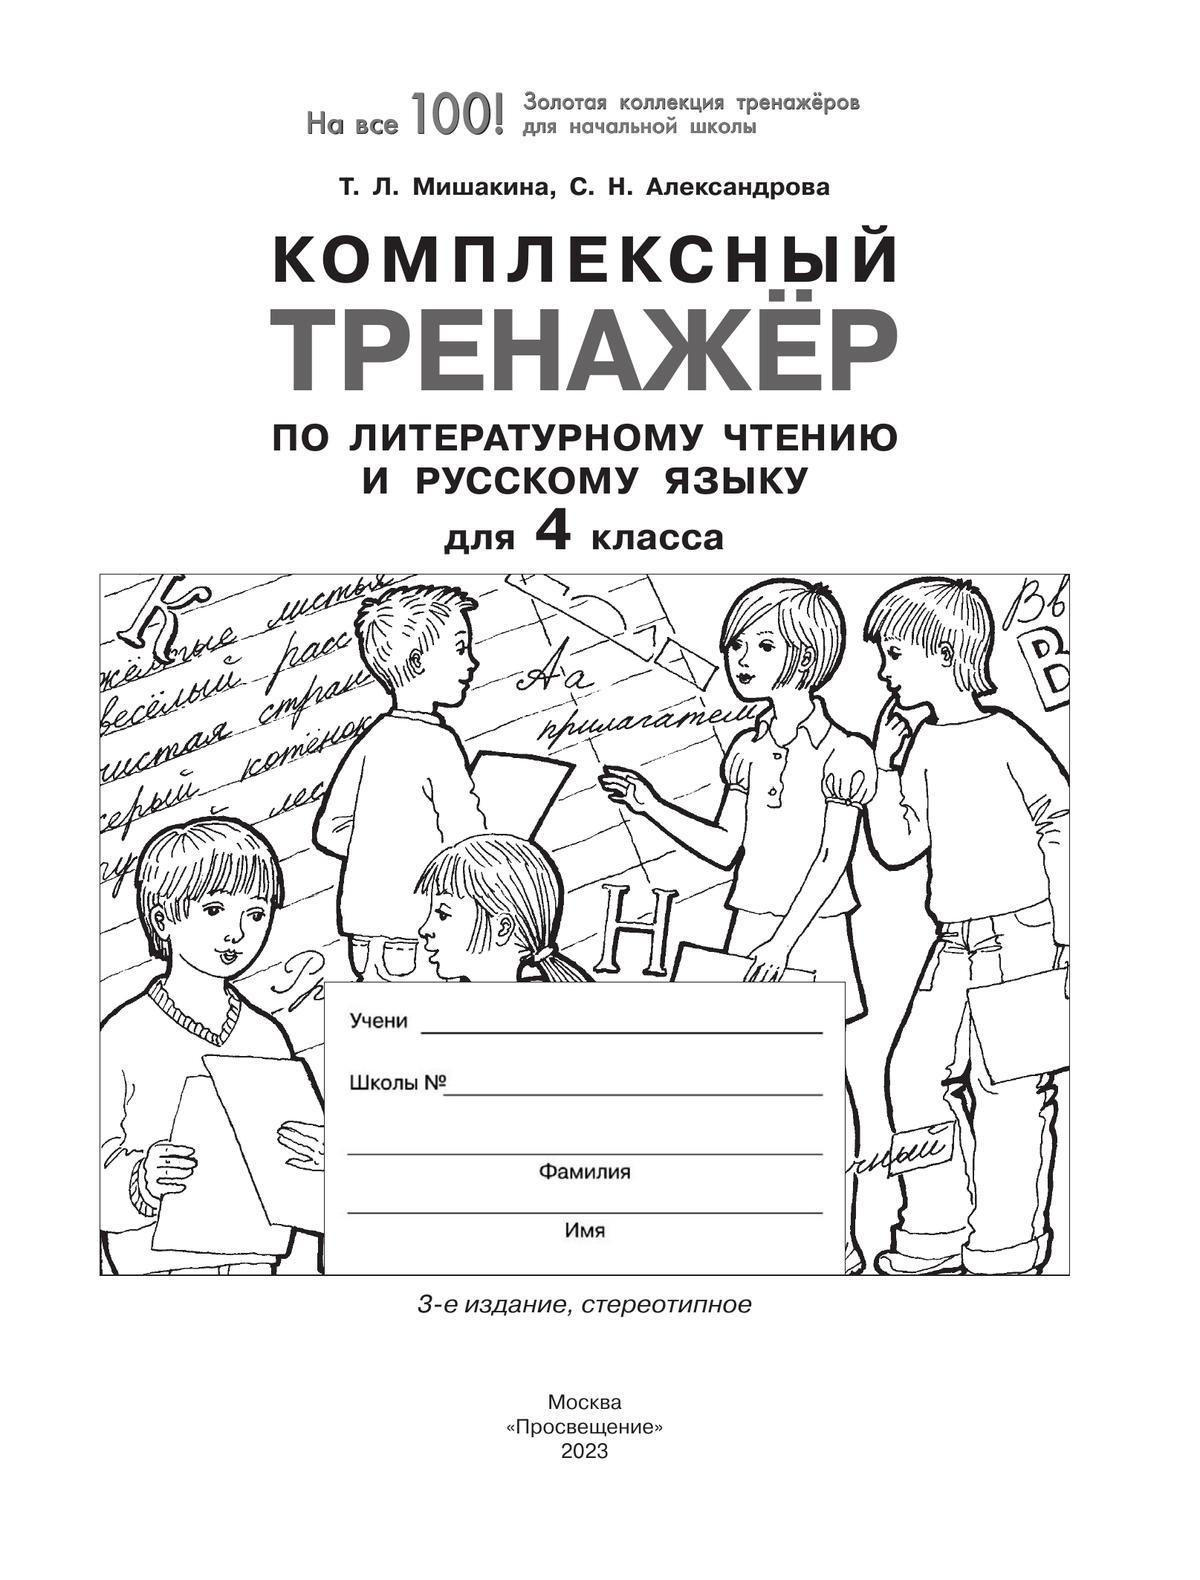 Комплексный тренажер по литературному чтению и русскому языку для 4 класса 3